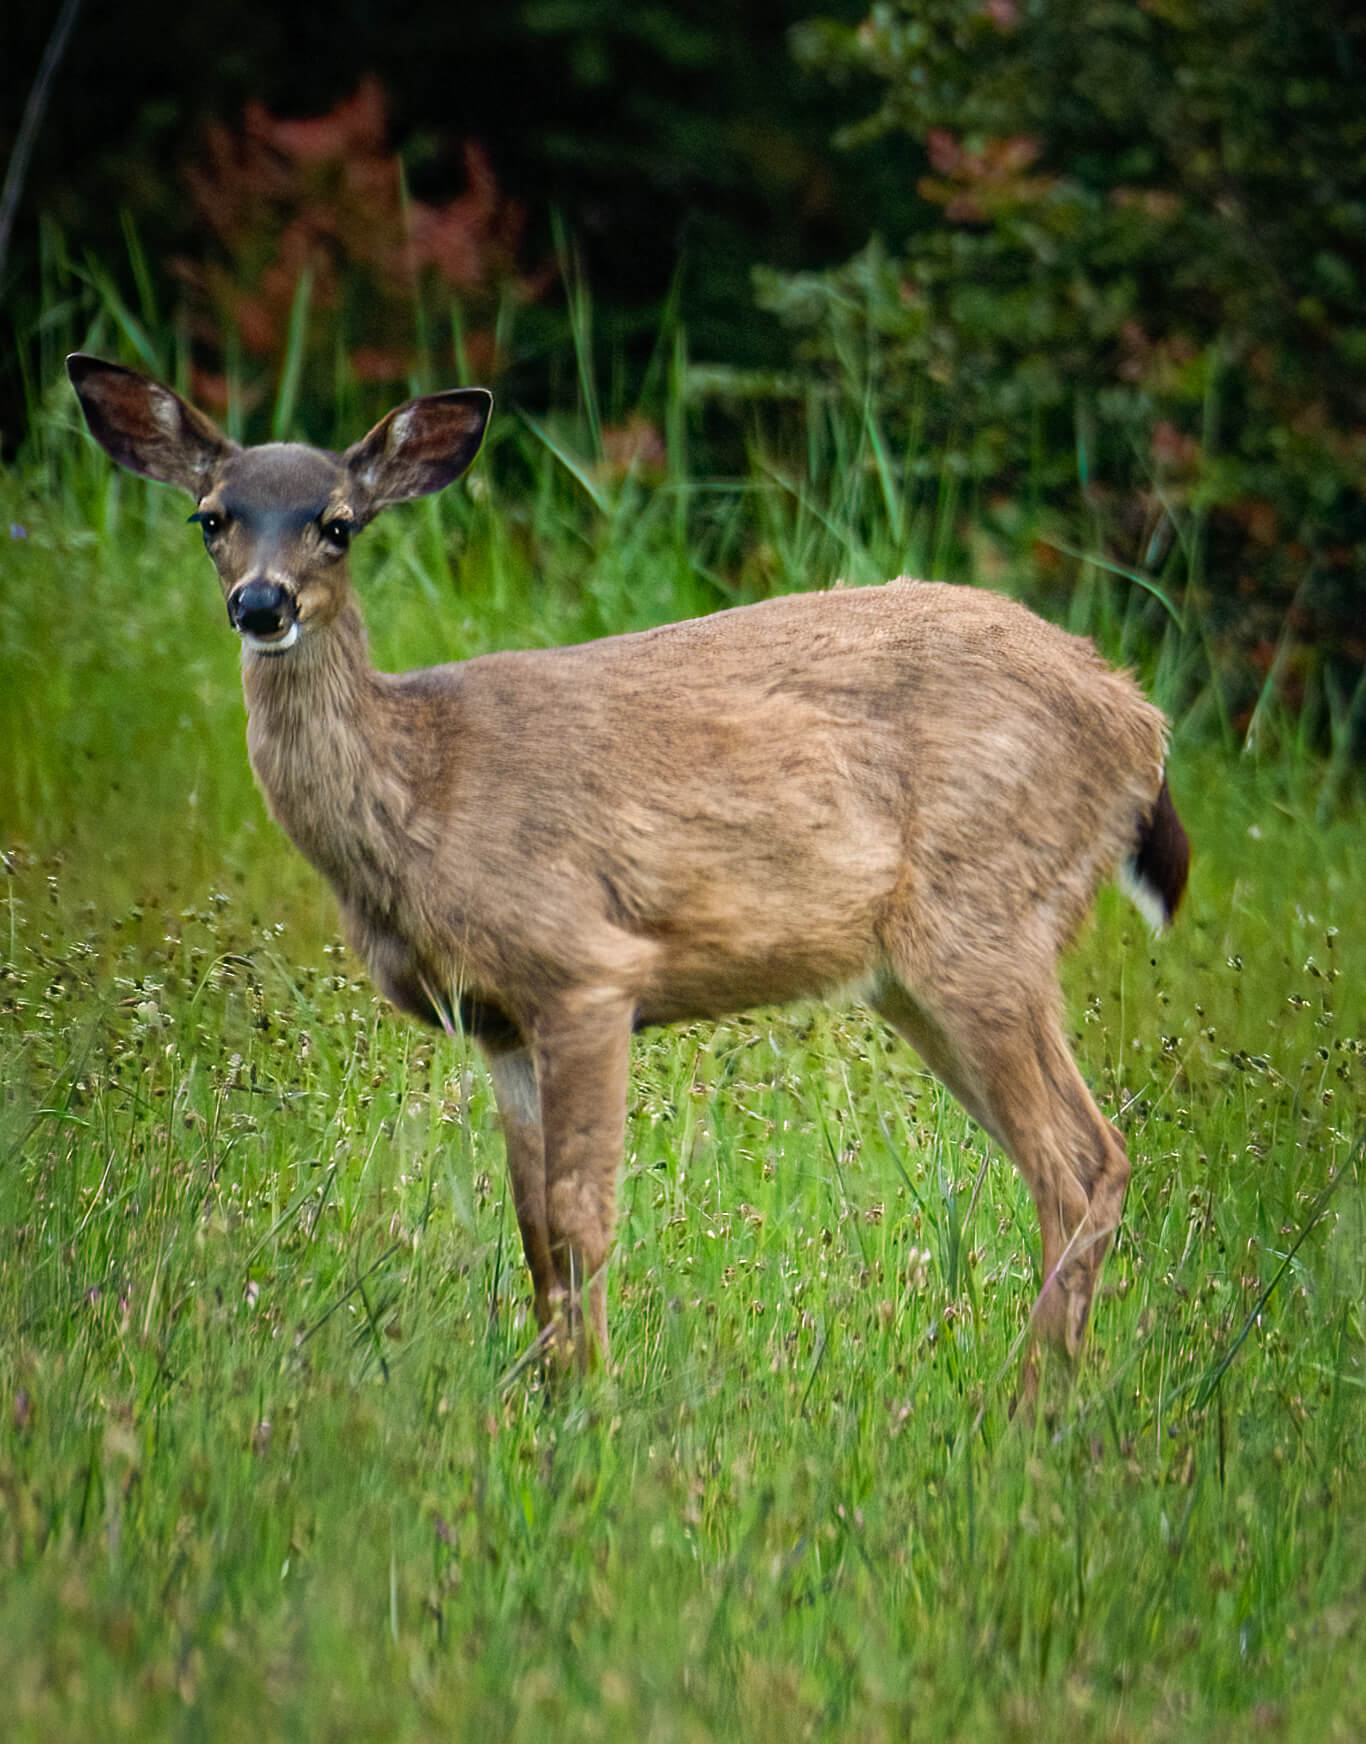 Sea Ridge deer looking at camera in green meadow